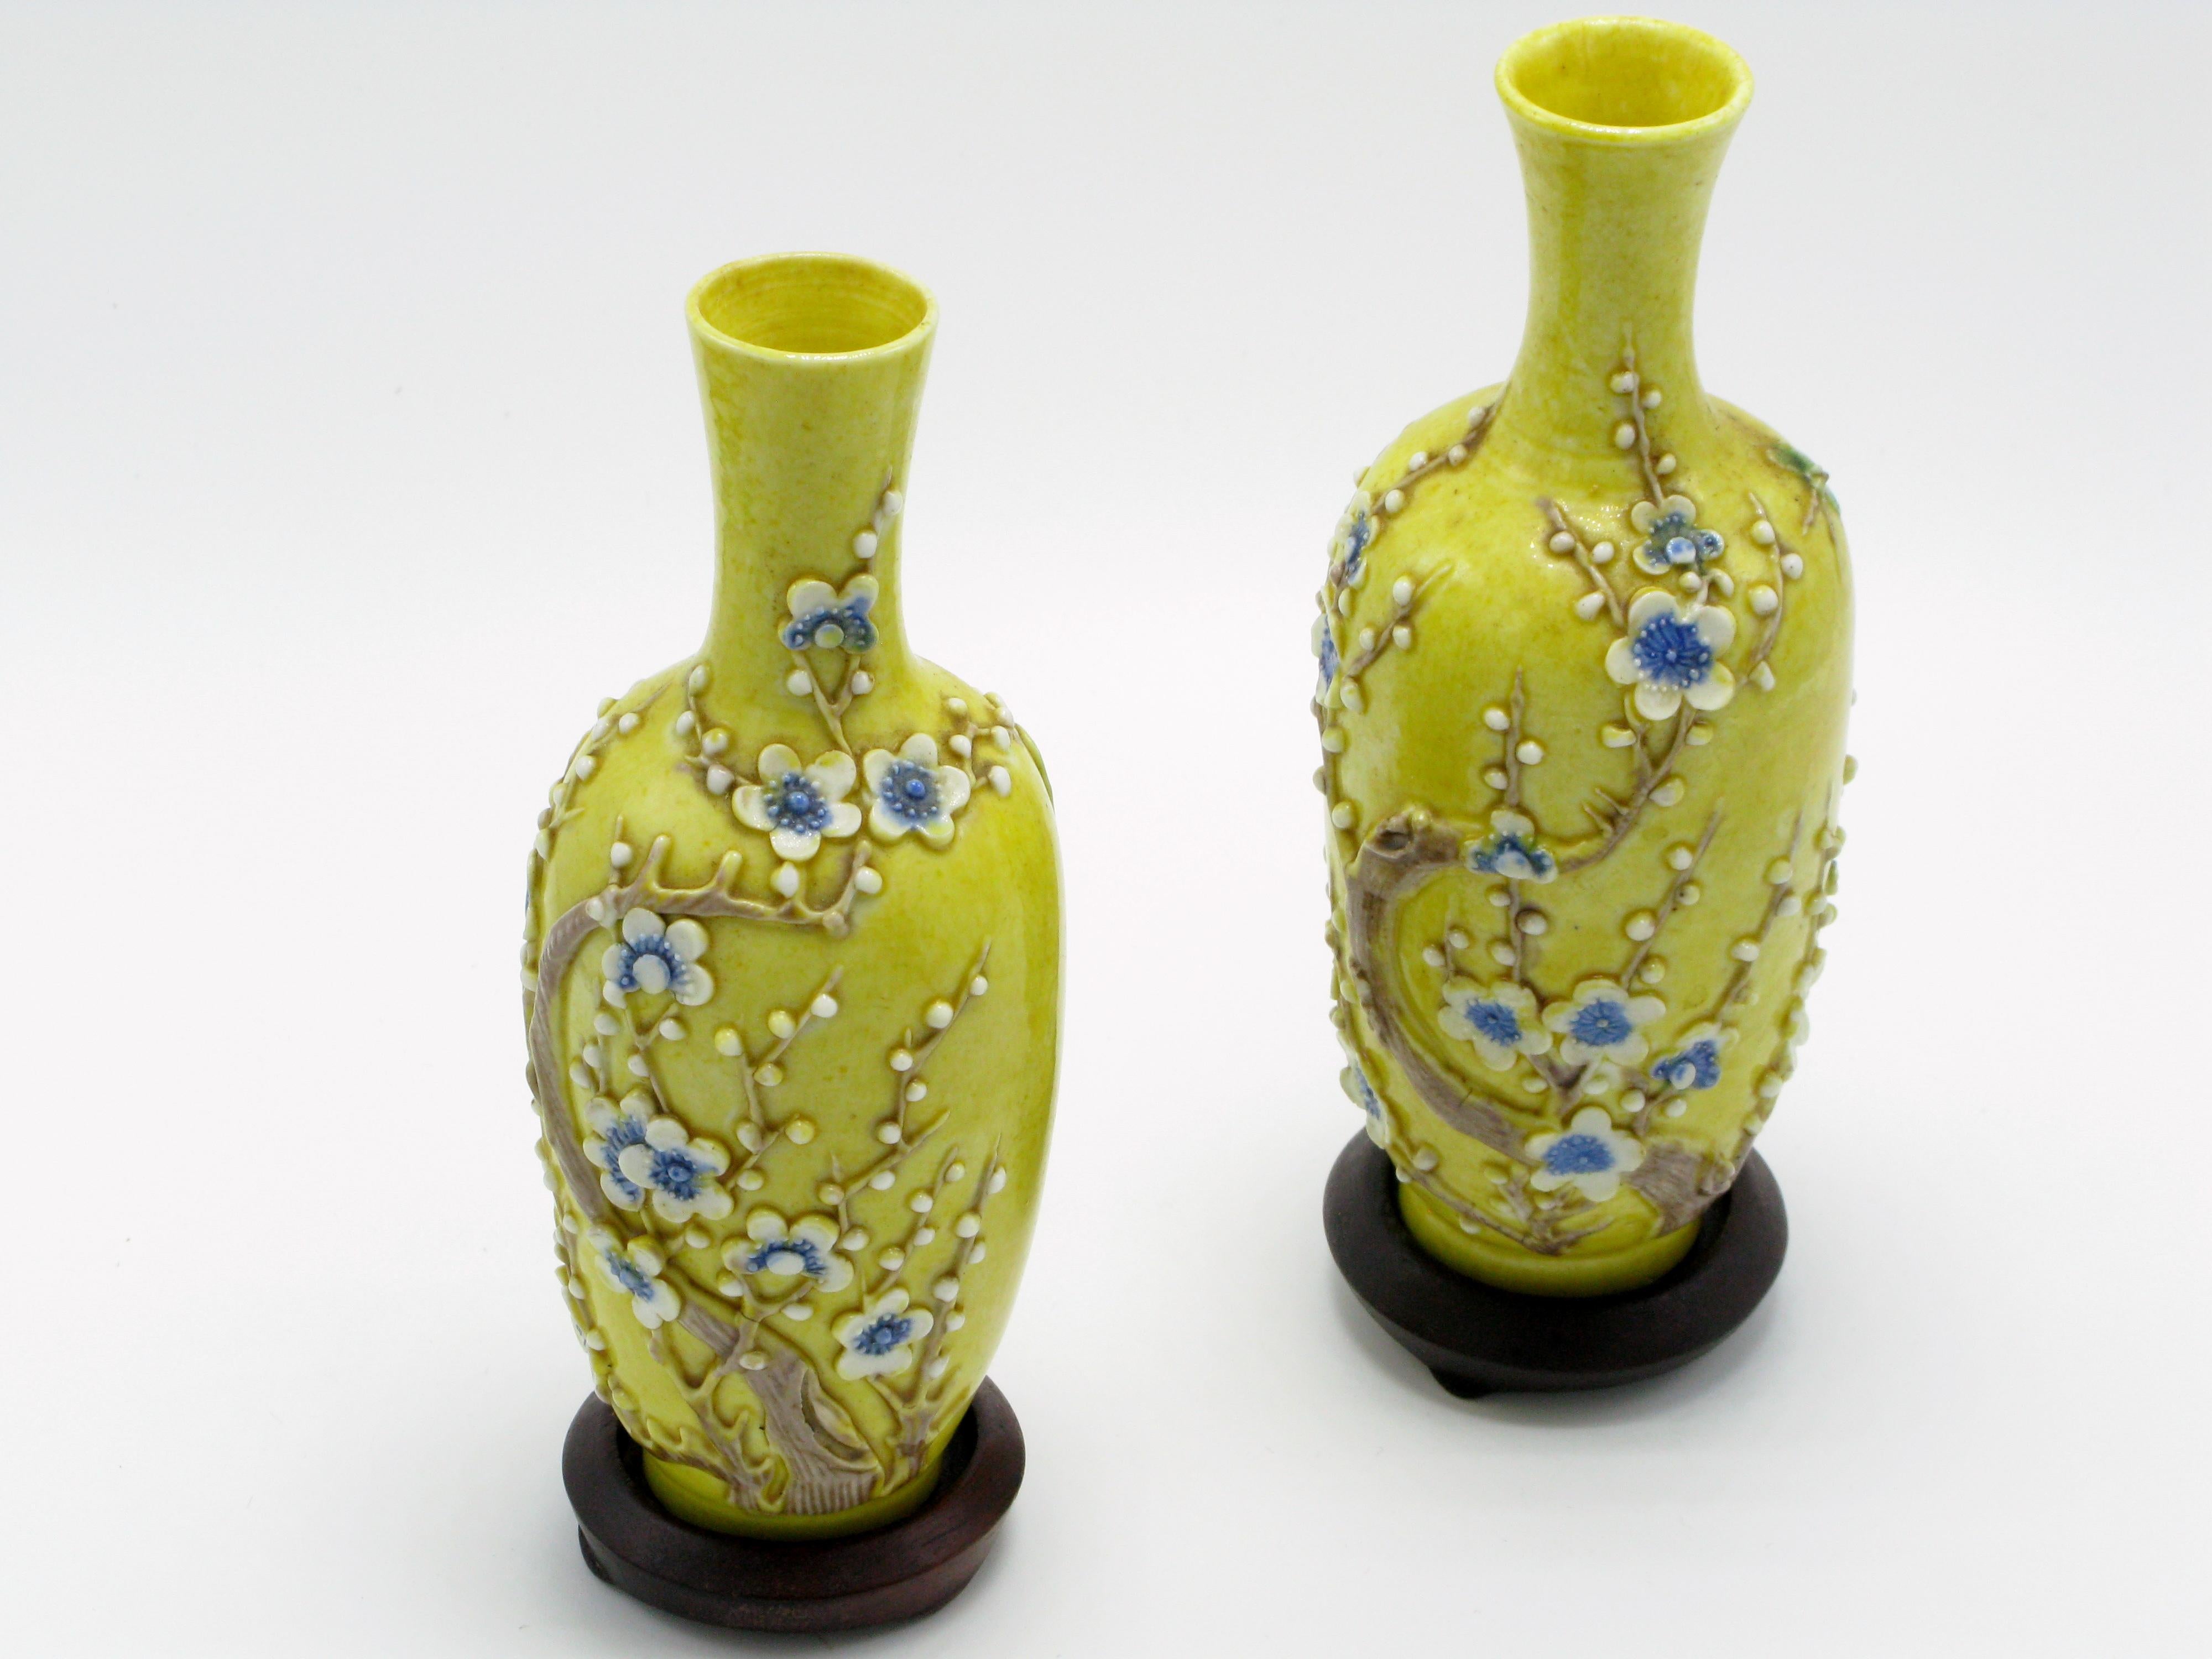 Jolie paire de vases miniatures chinois en porcelaine à fond jaune avec des appliques de fleurs de prunier et de papillons. Chacun repose sur des bases circulaires en bois de rose.
Marqué China gravé dans le fond et daté fin 19e début 20e siècle,